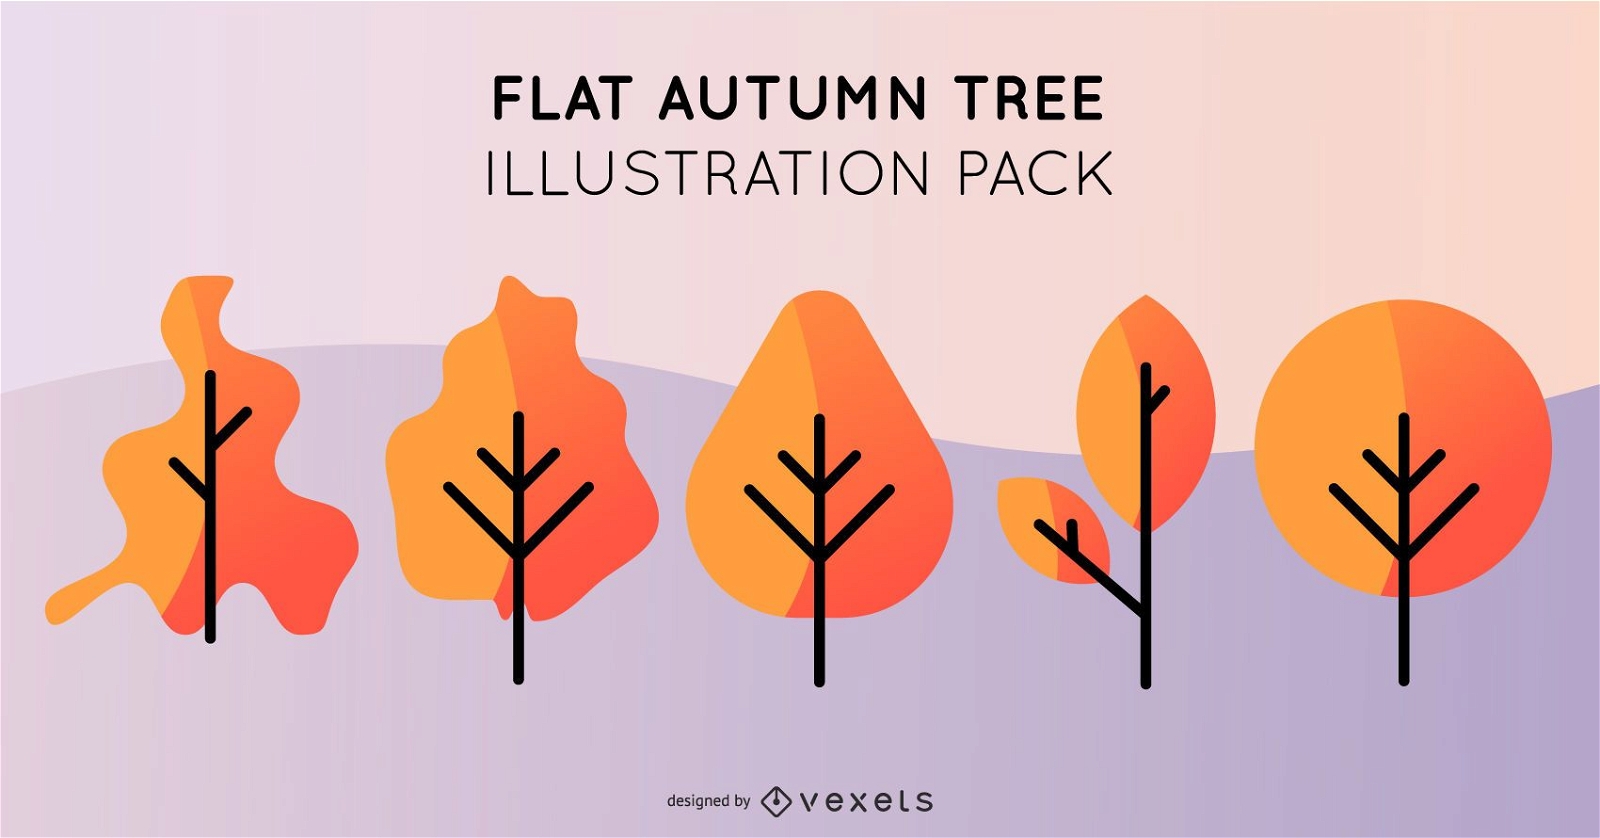 Paquete de ilustración de árbol de otoño plano